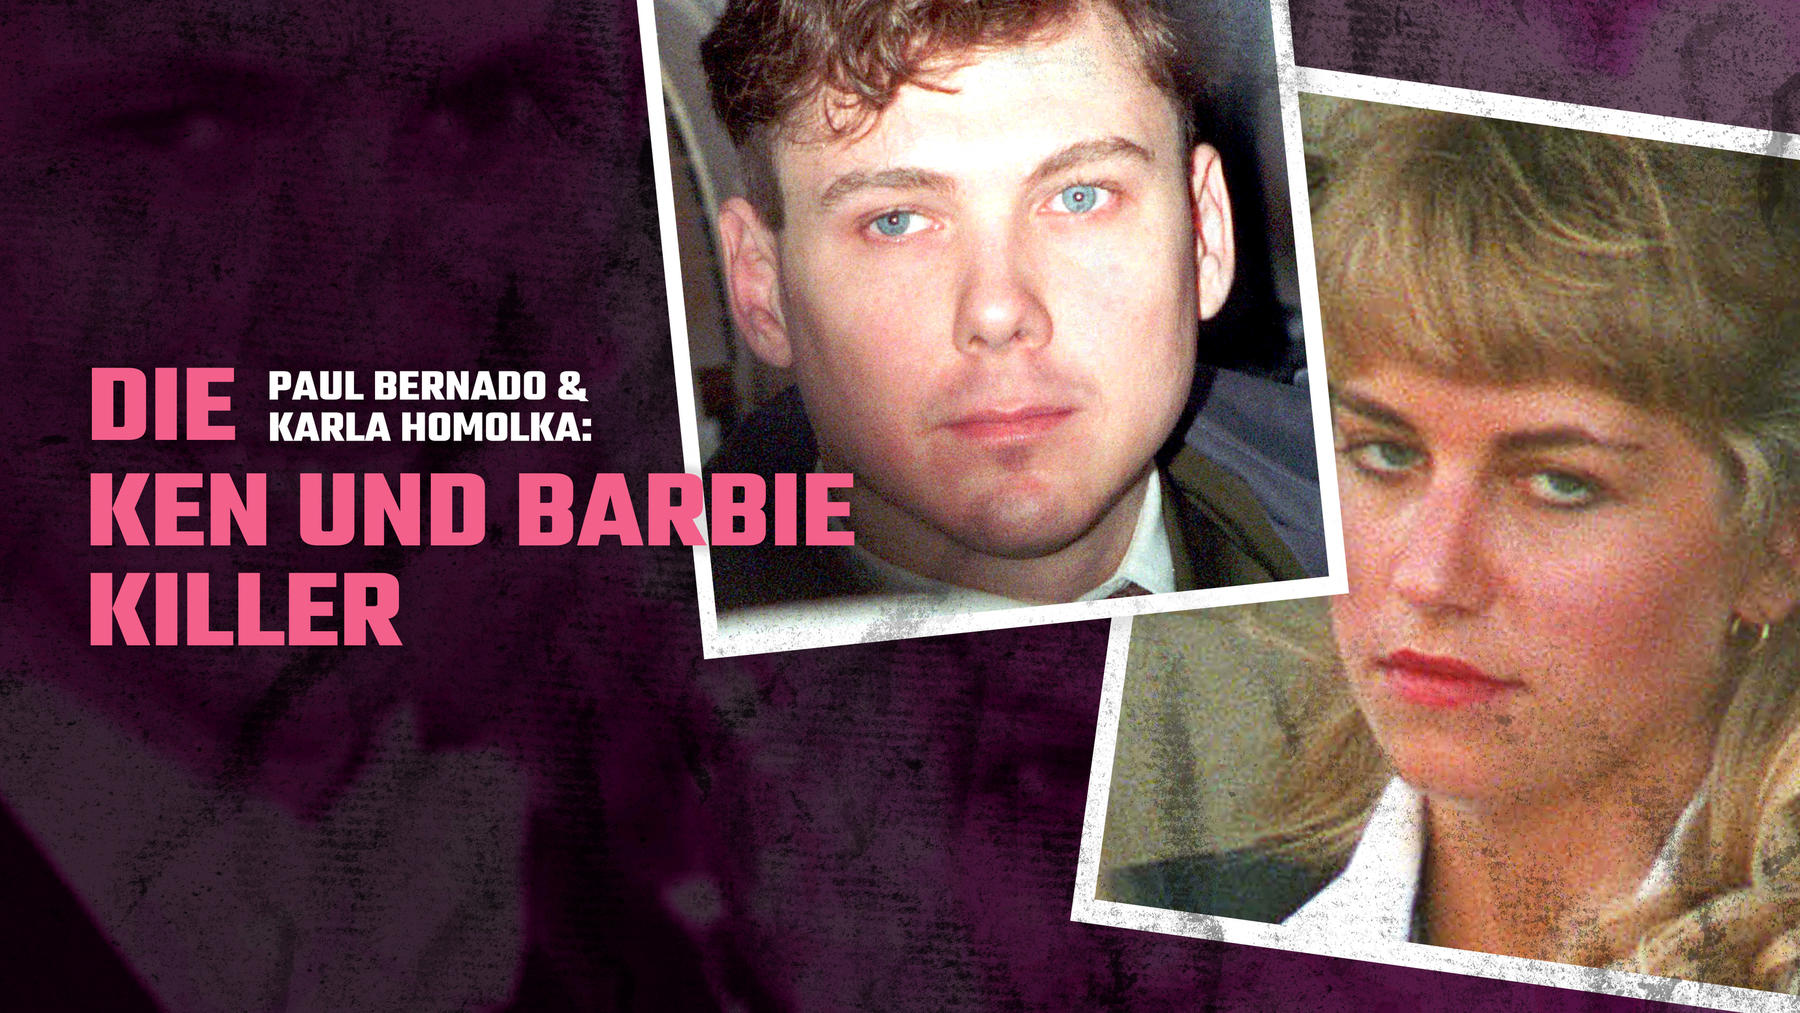 Paul Bernado & Karla Homolka: Die Ken und Barbie-Killer